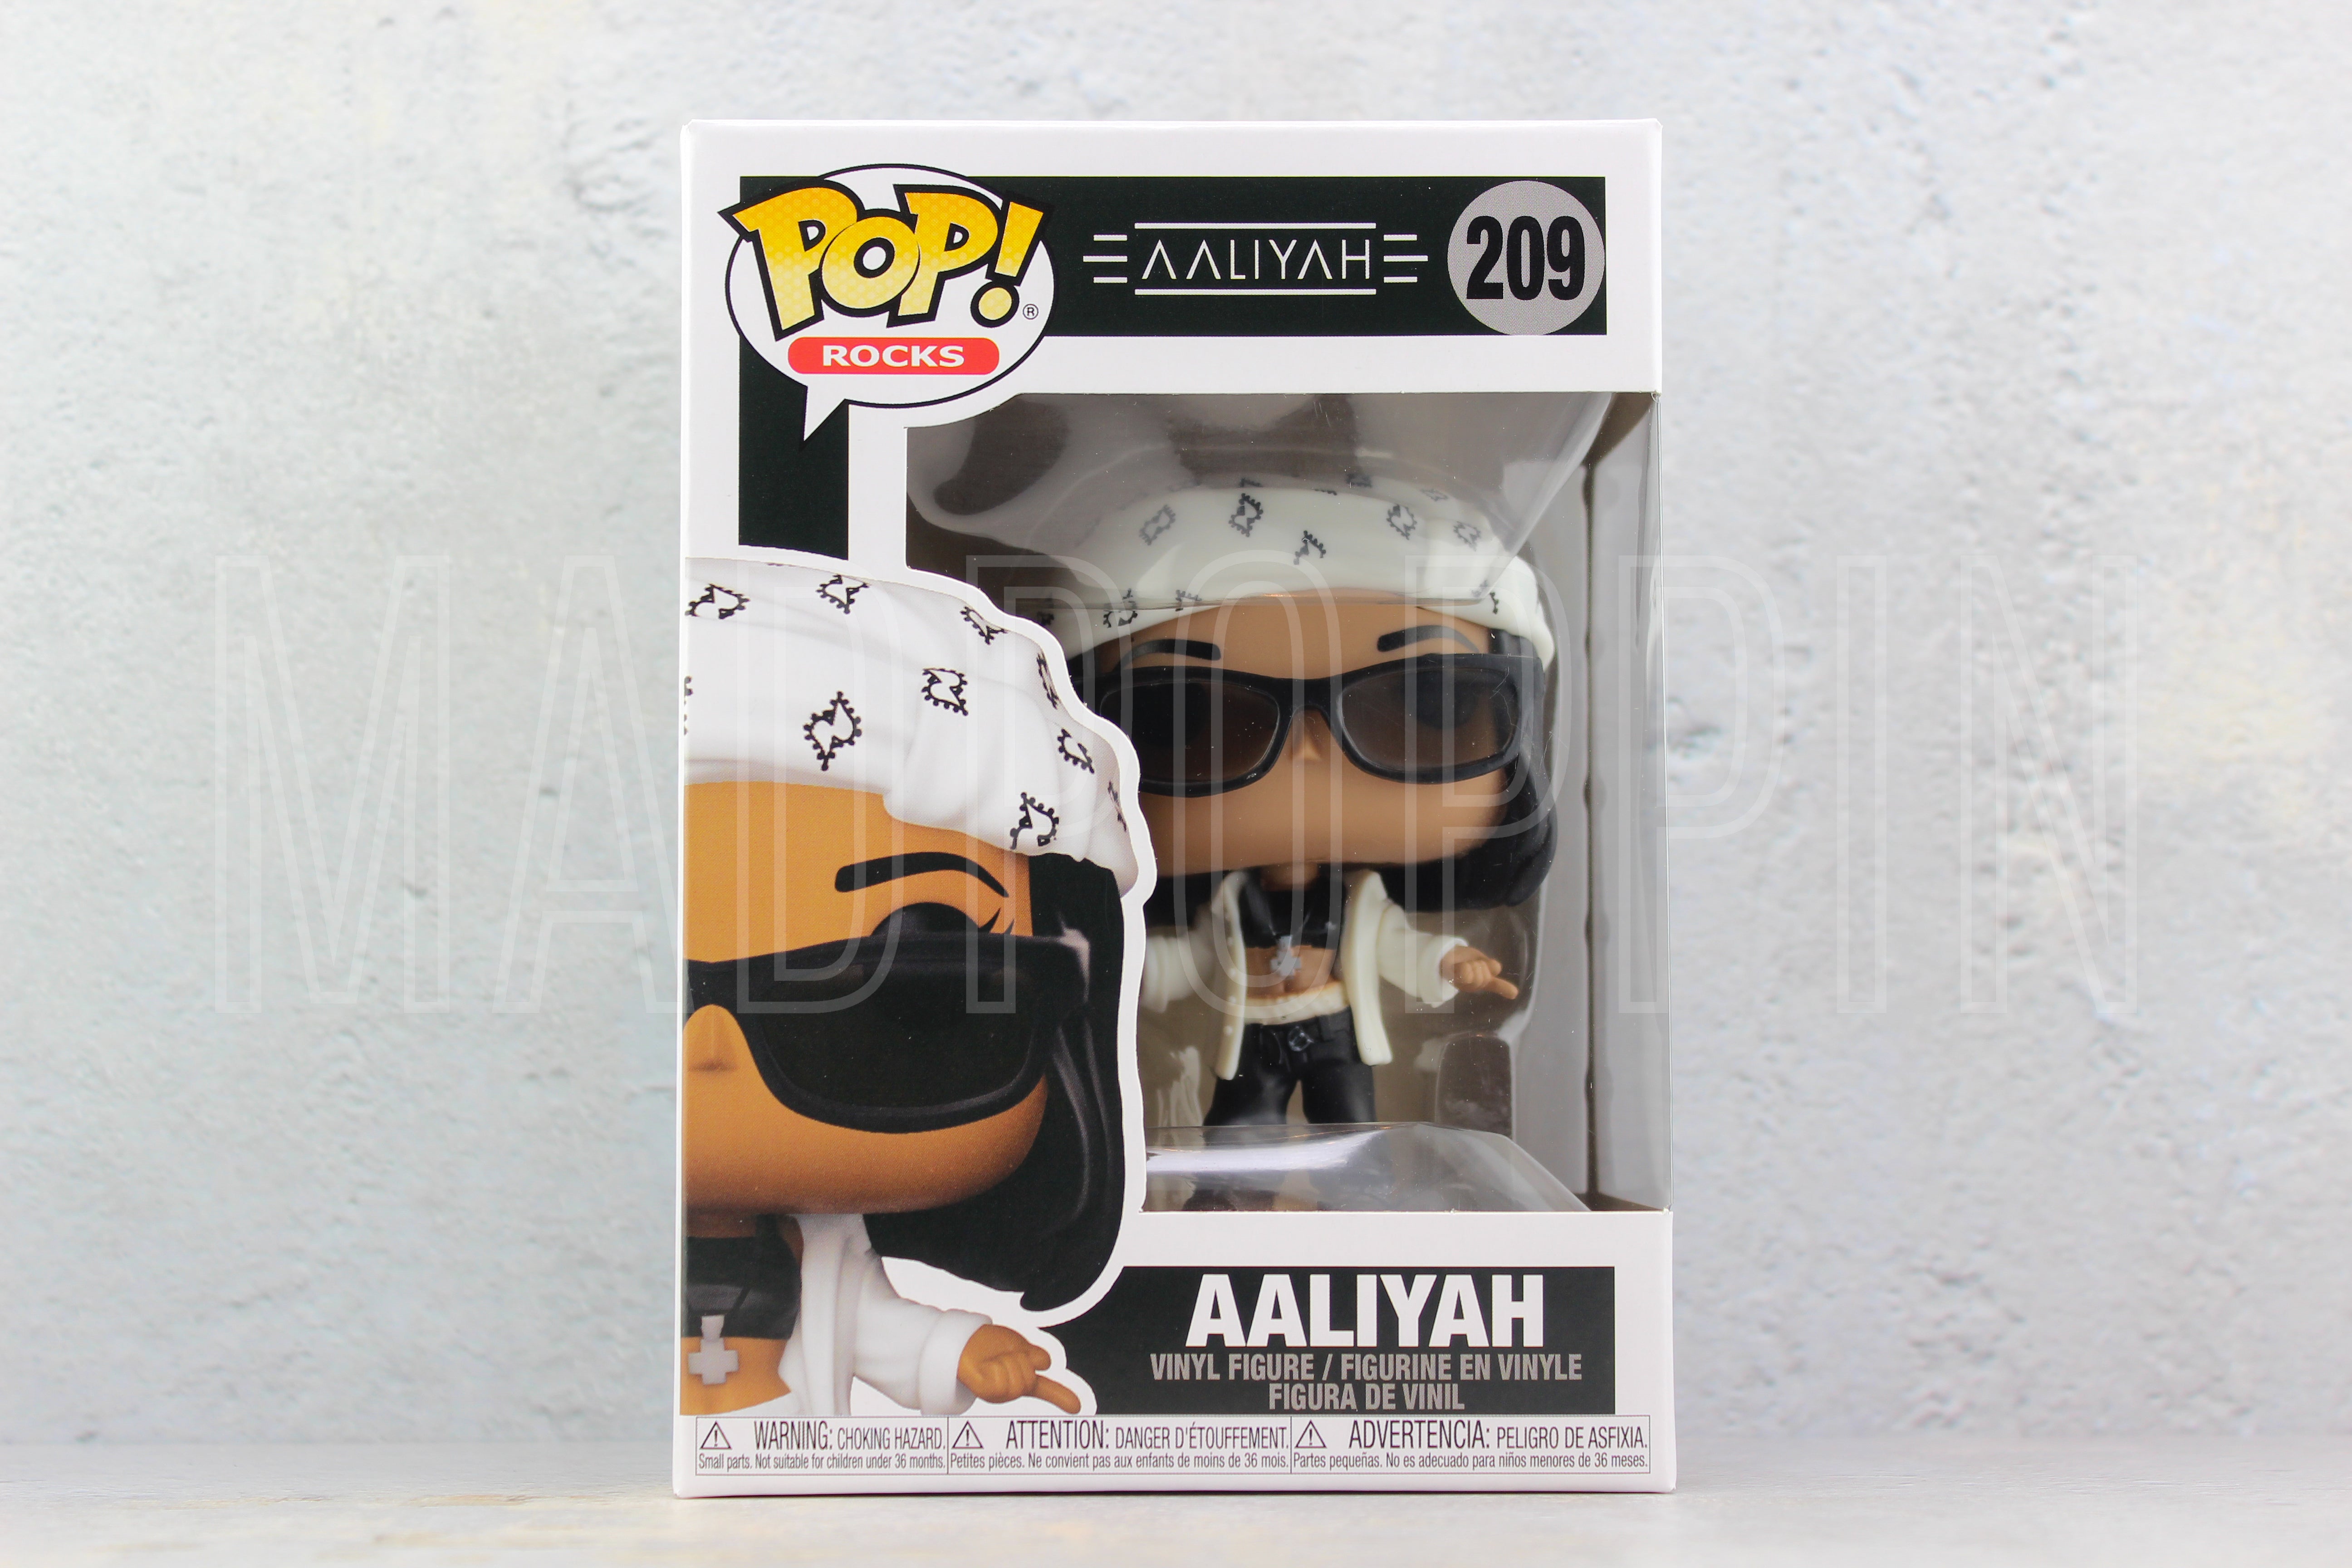 POP! Rocks: Aaliyah - Aaliyah